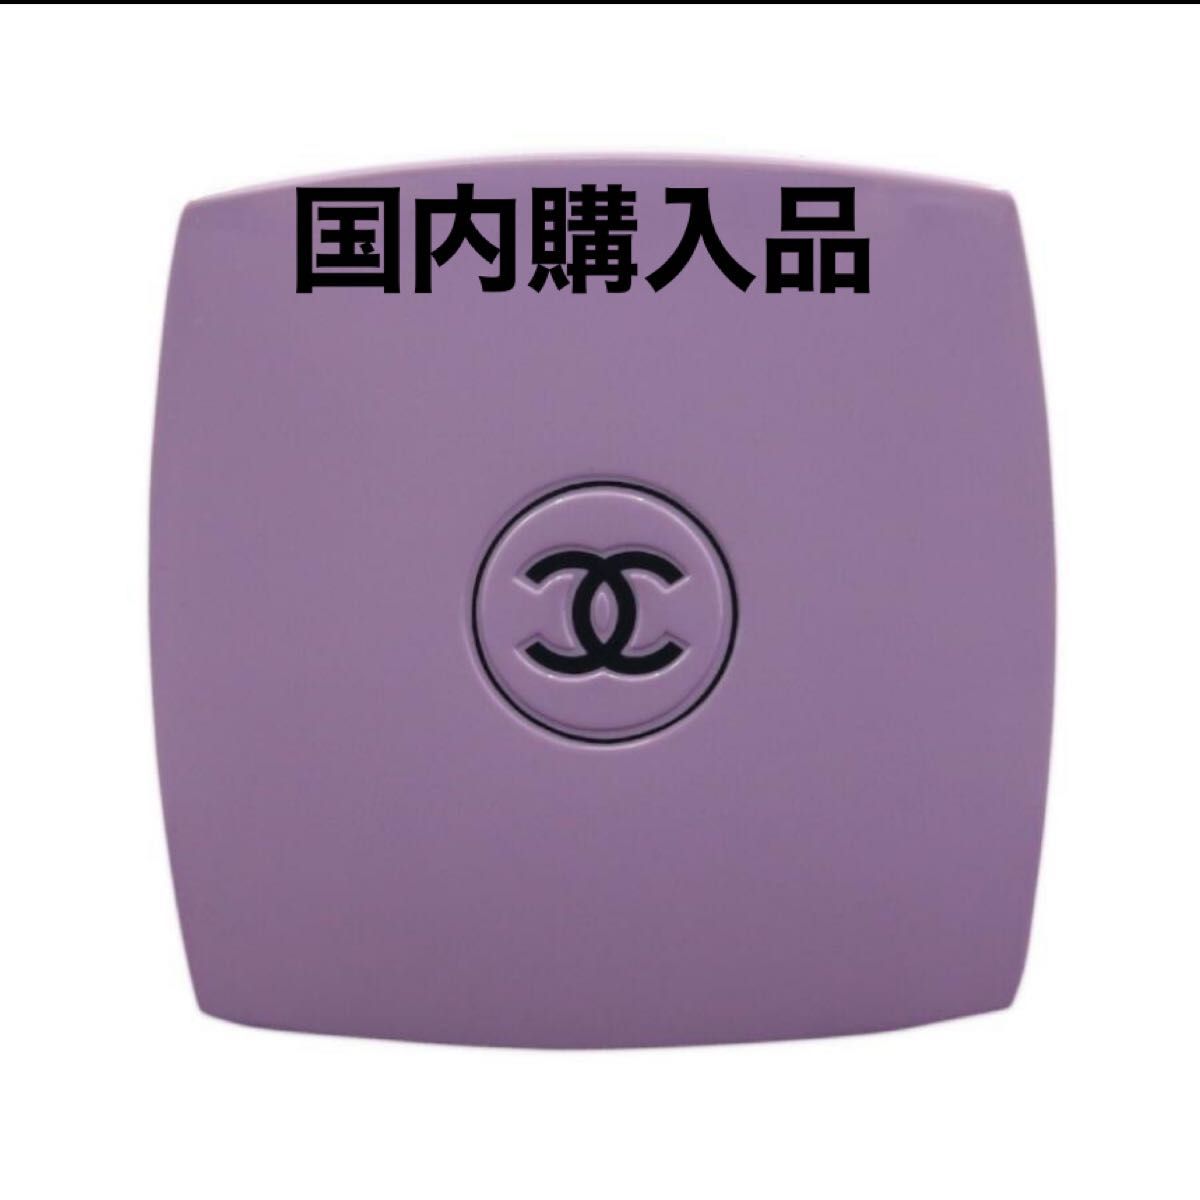 安い特価 CHANEL シャネル ミラー 鏡 紫 パープルの通販 by 悠木's